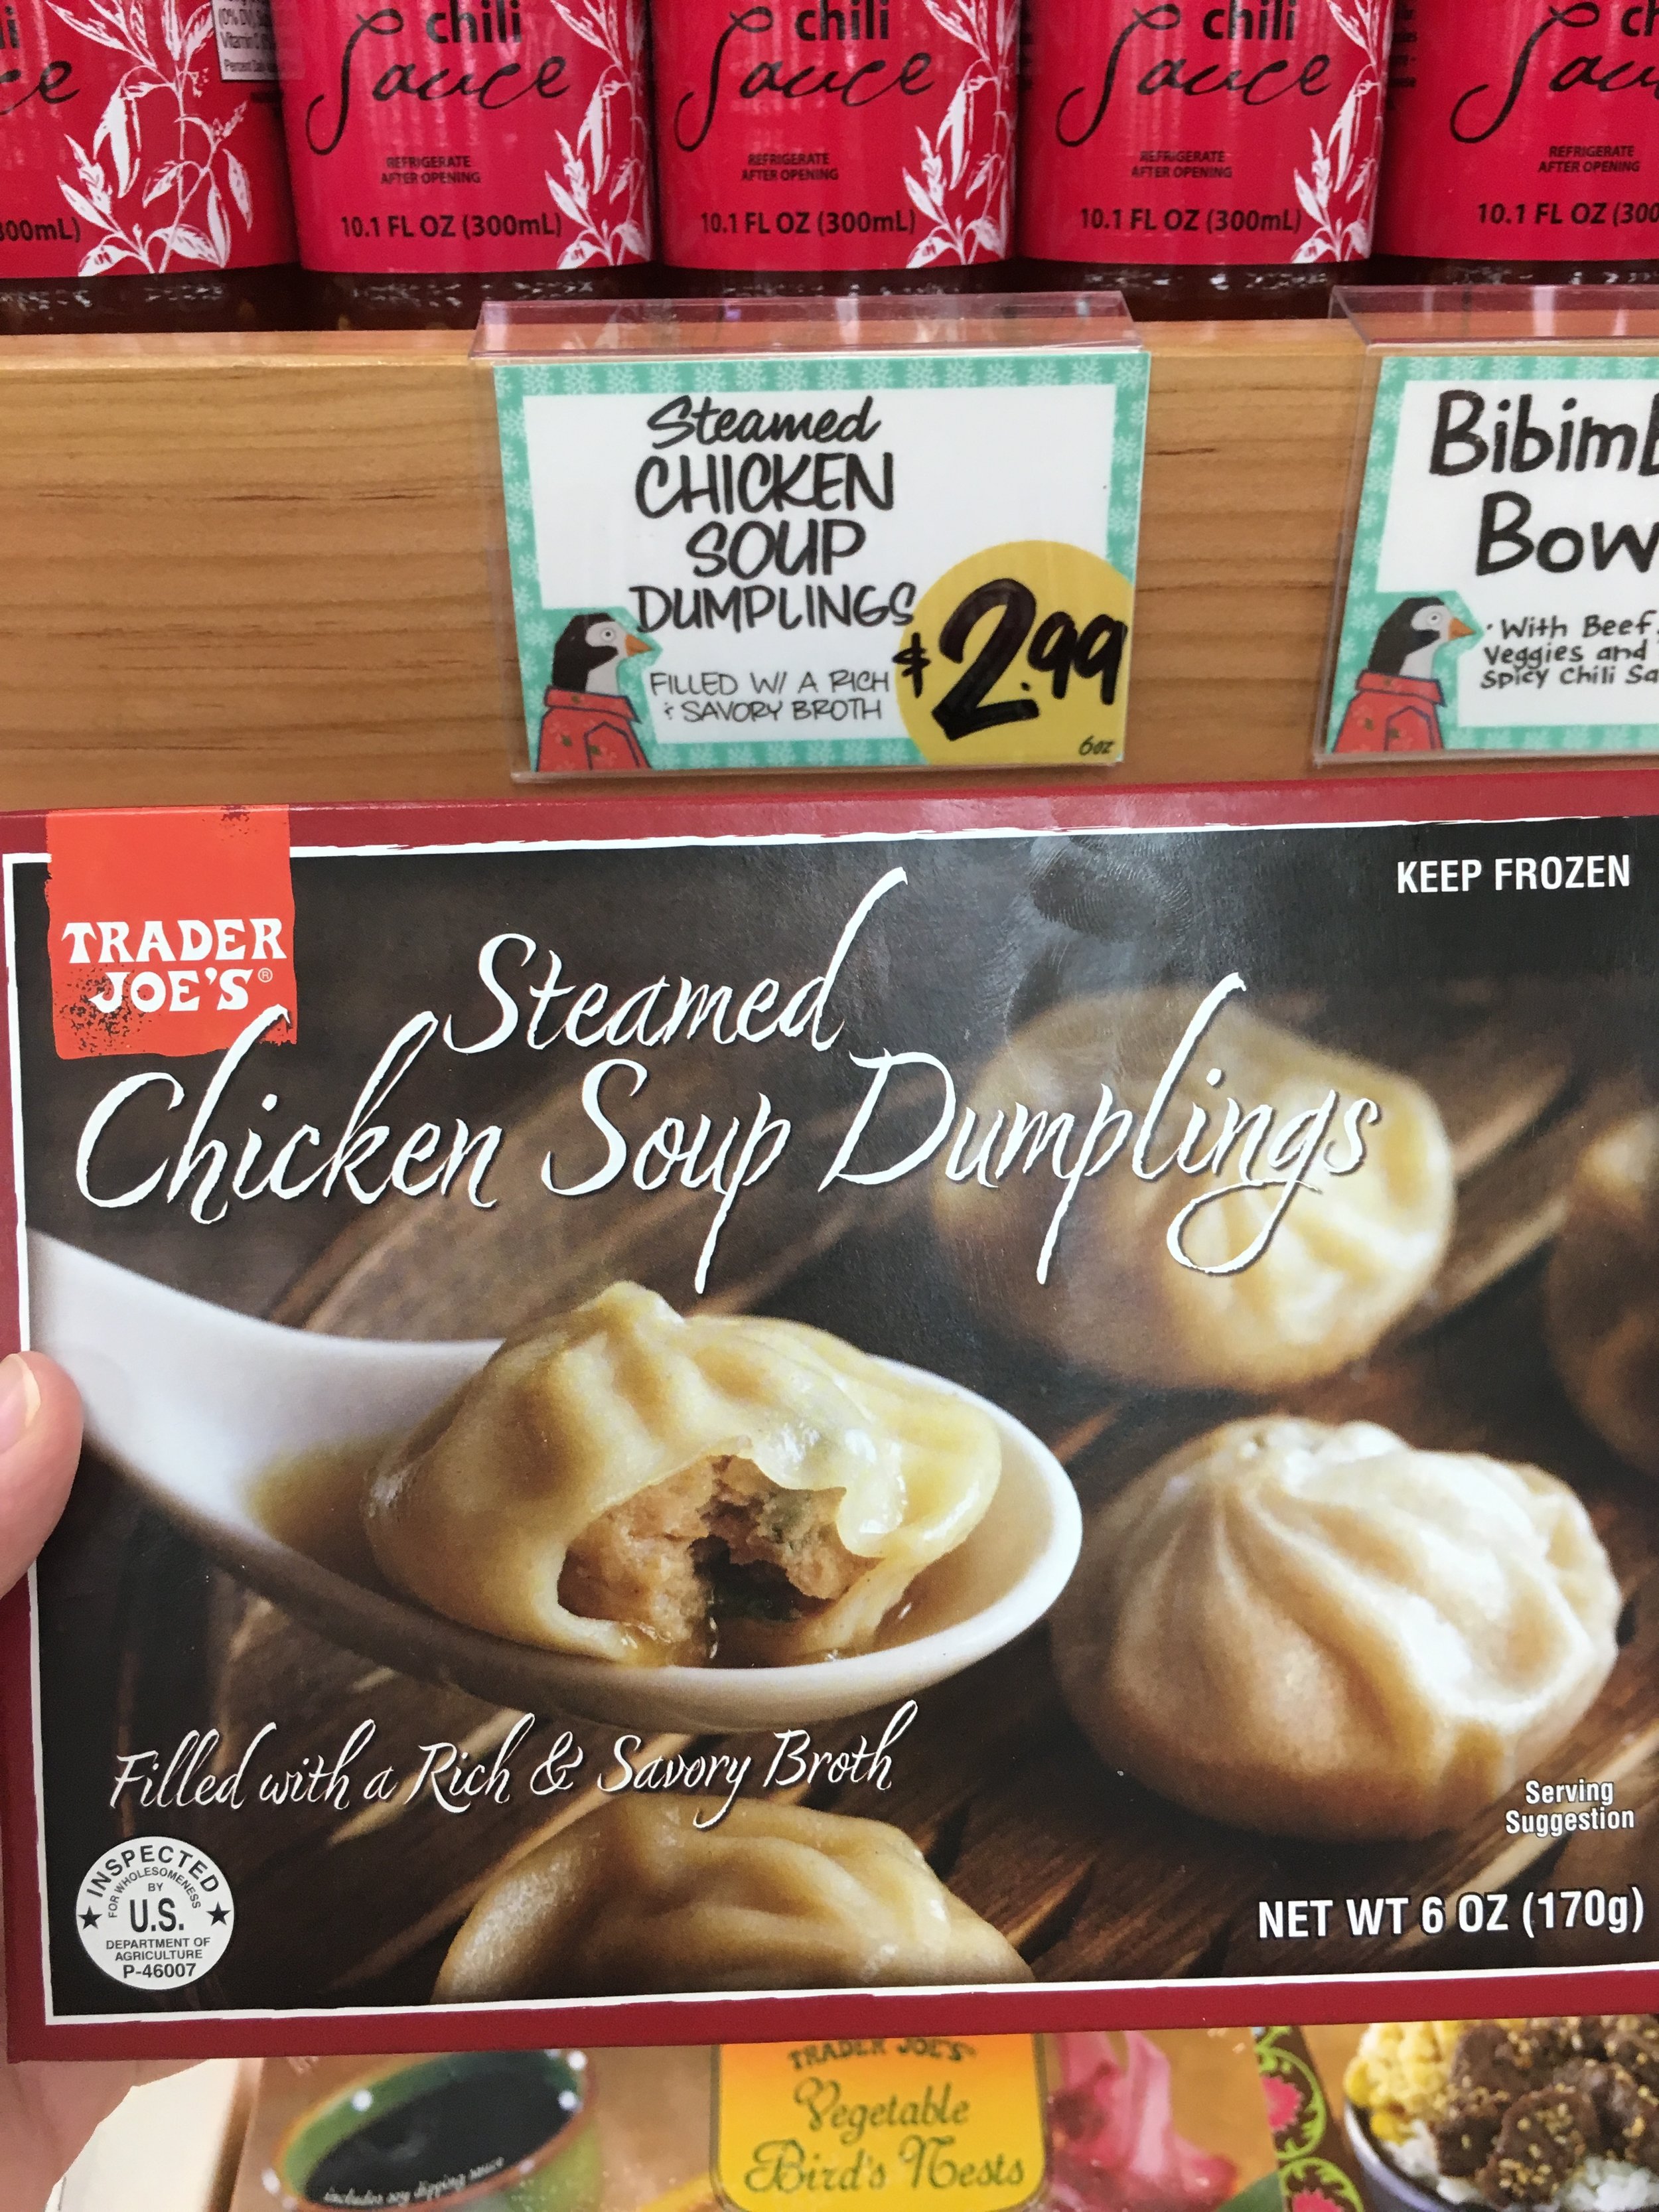 Exploring Trader Joe's: Trader Joe's Steamed Chicken Soup Dumplings